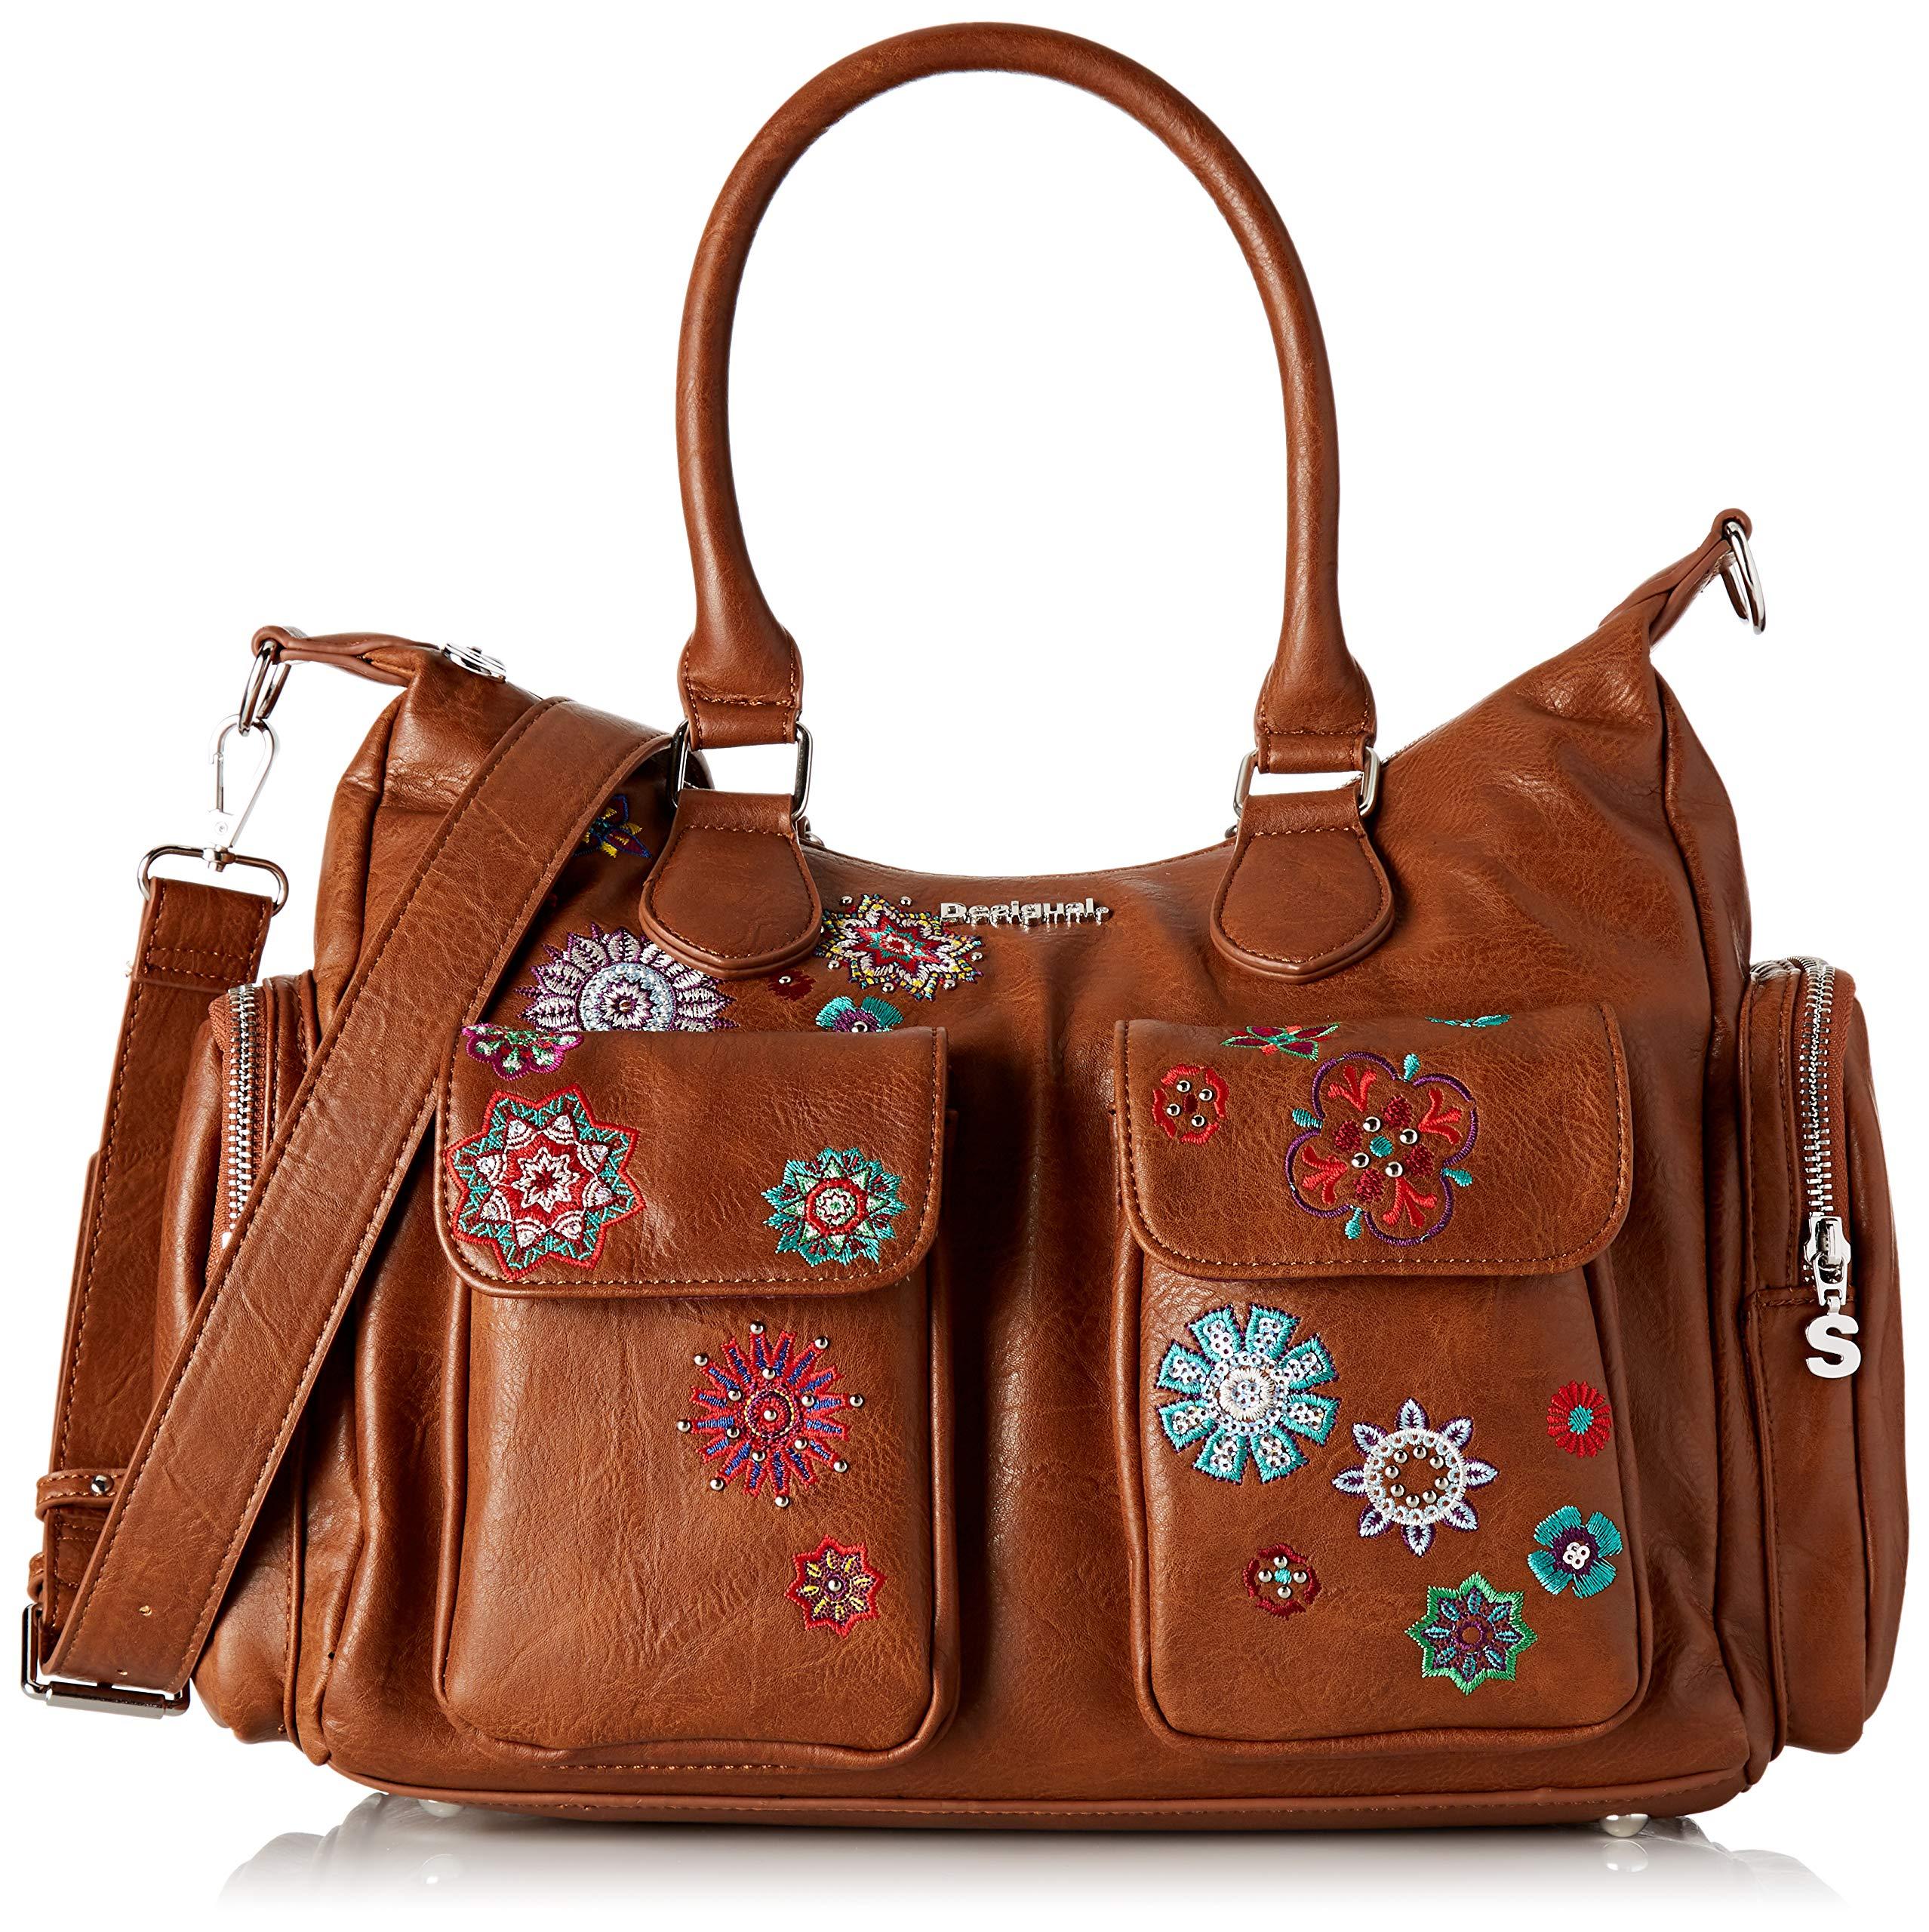 Desigual 19waxpx0 Shoulder Bag in Maroon (Brown) - Lyst